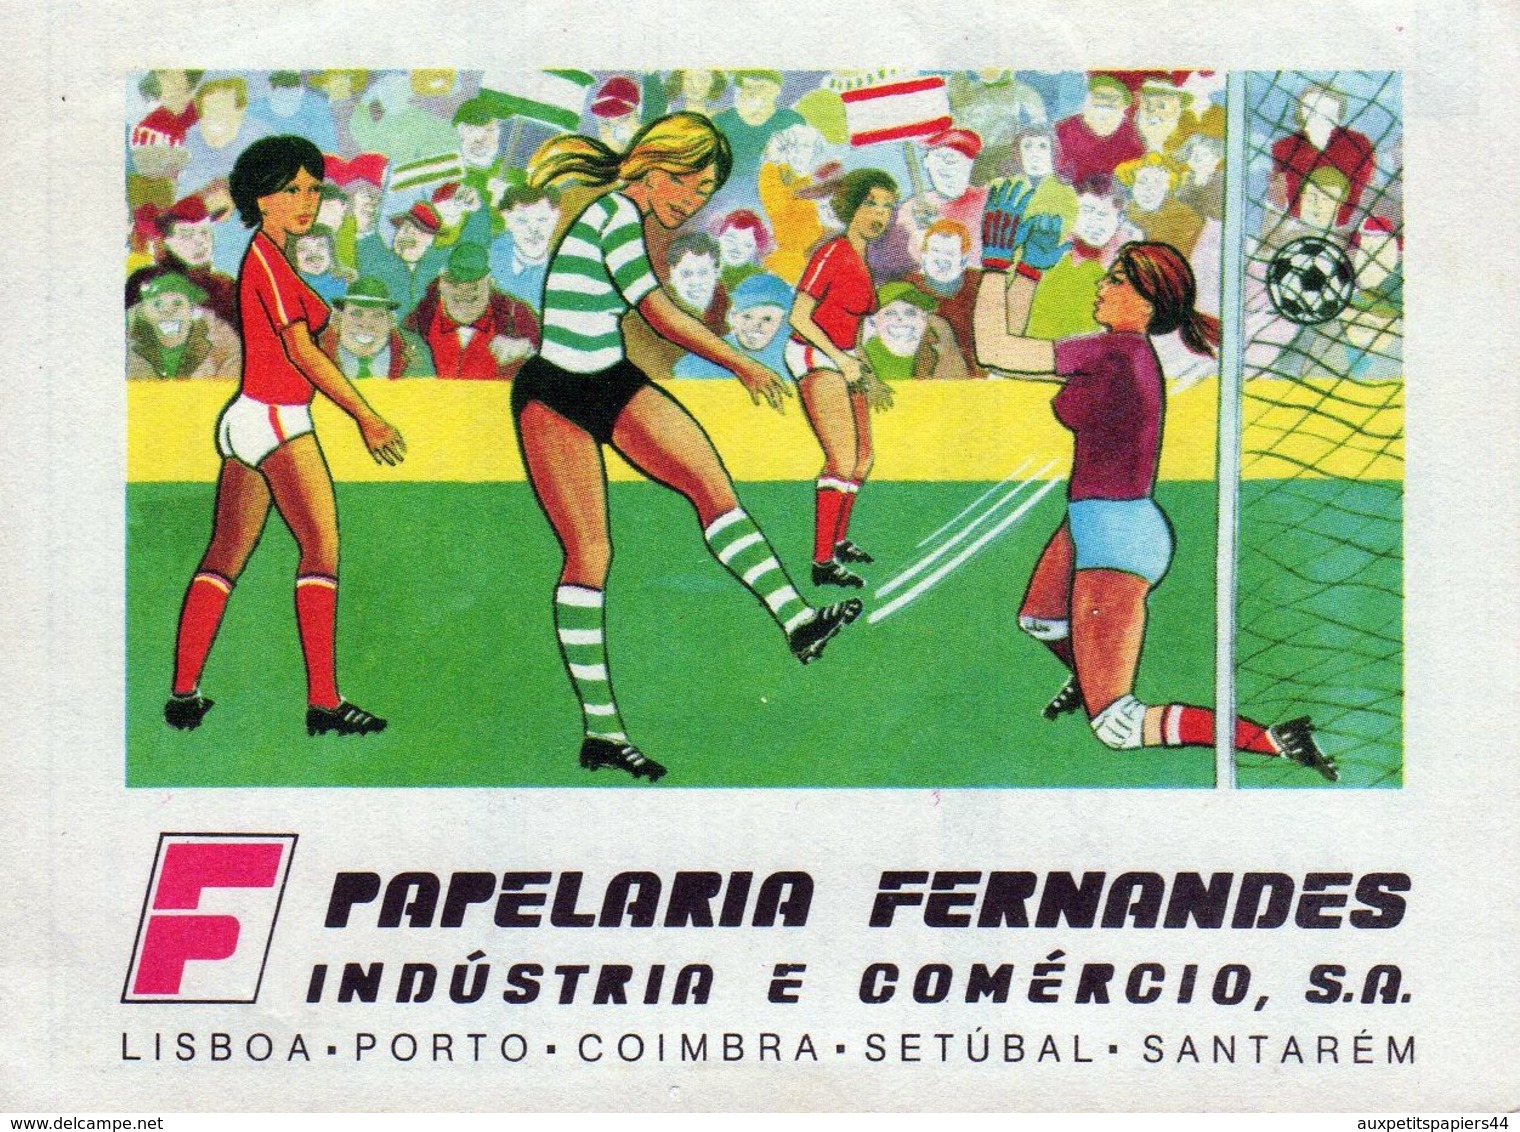 Calendrier Original Sport Lisboa E Benefica - Campeao Nacional 1986-1987 - Football Portugais - Papelaria Fernandes - Kleinformat : 1981-90